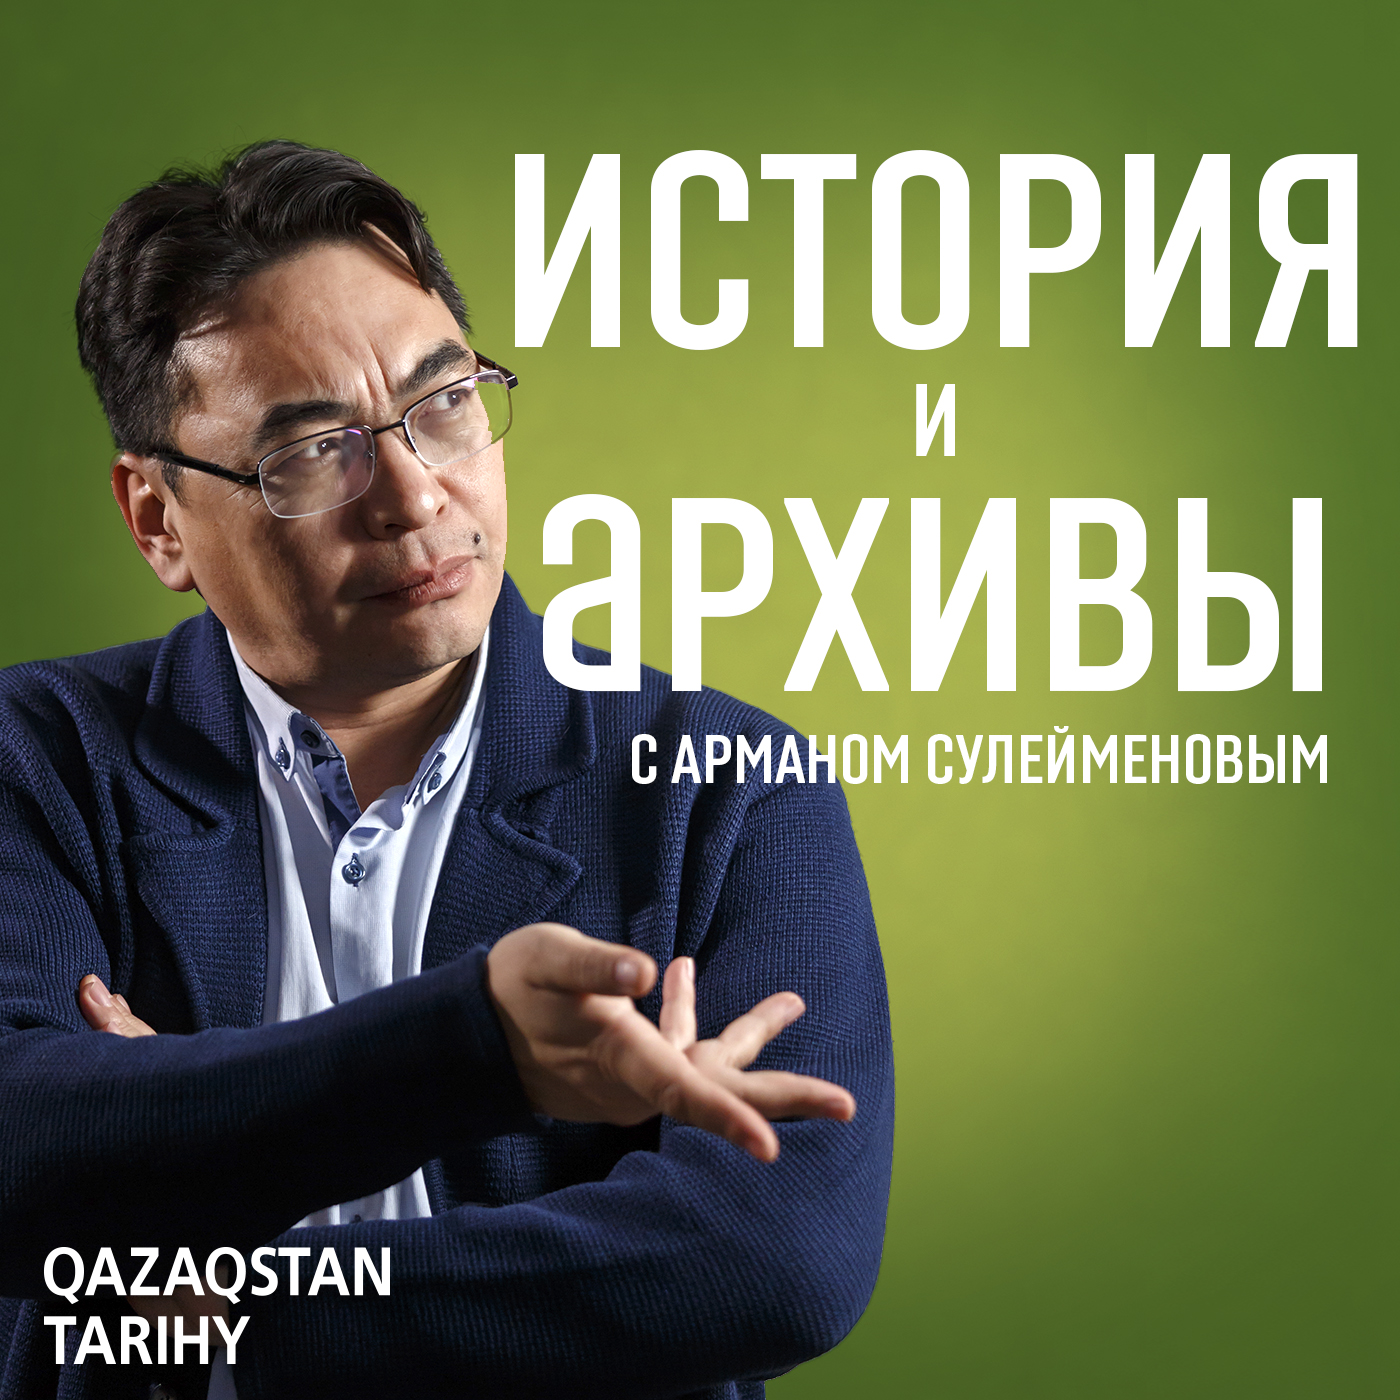 Казахская АССР - политический эксперимент. Часть 2 - e-history.kz